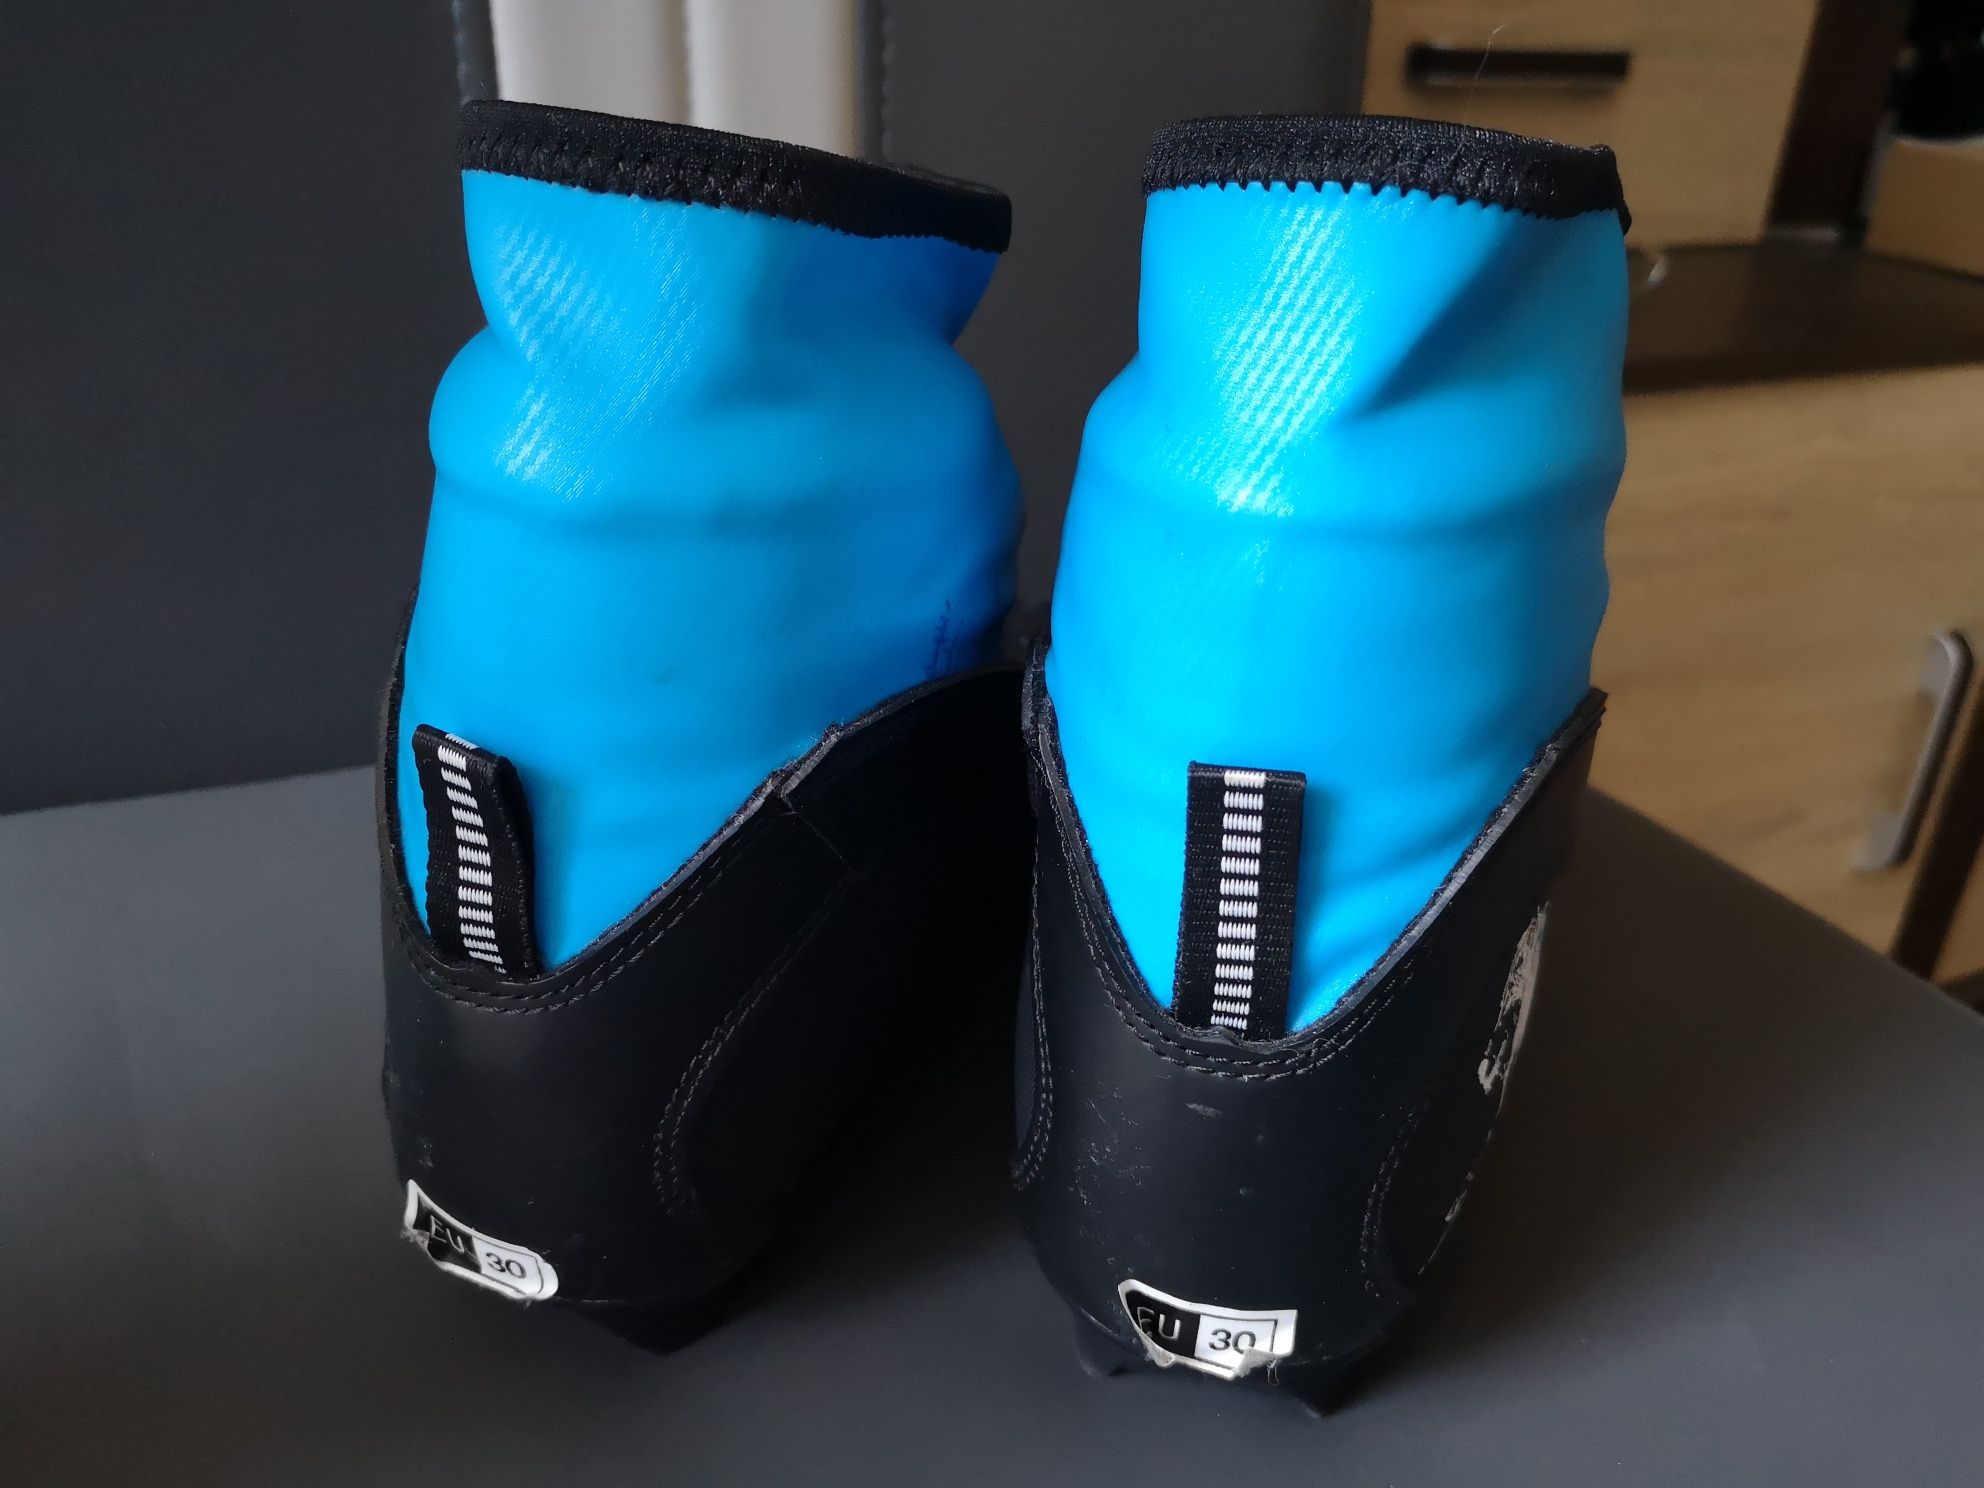 Buty do nart biegowych Rossignol Snow flake r. 30, w. 18,5 cm